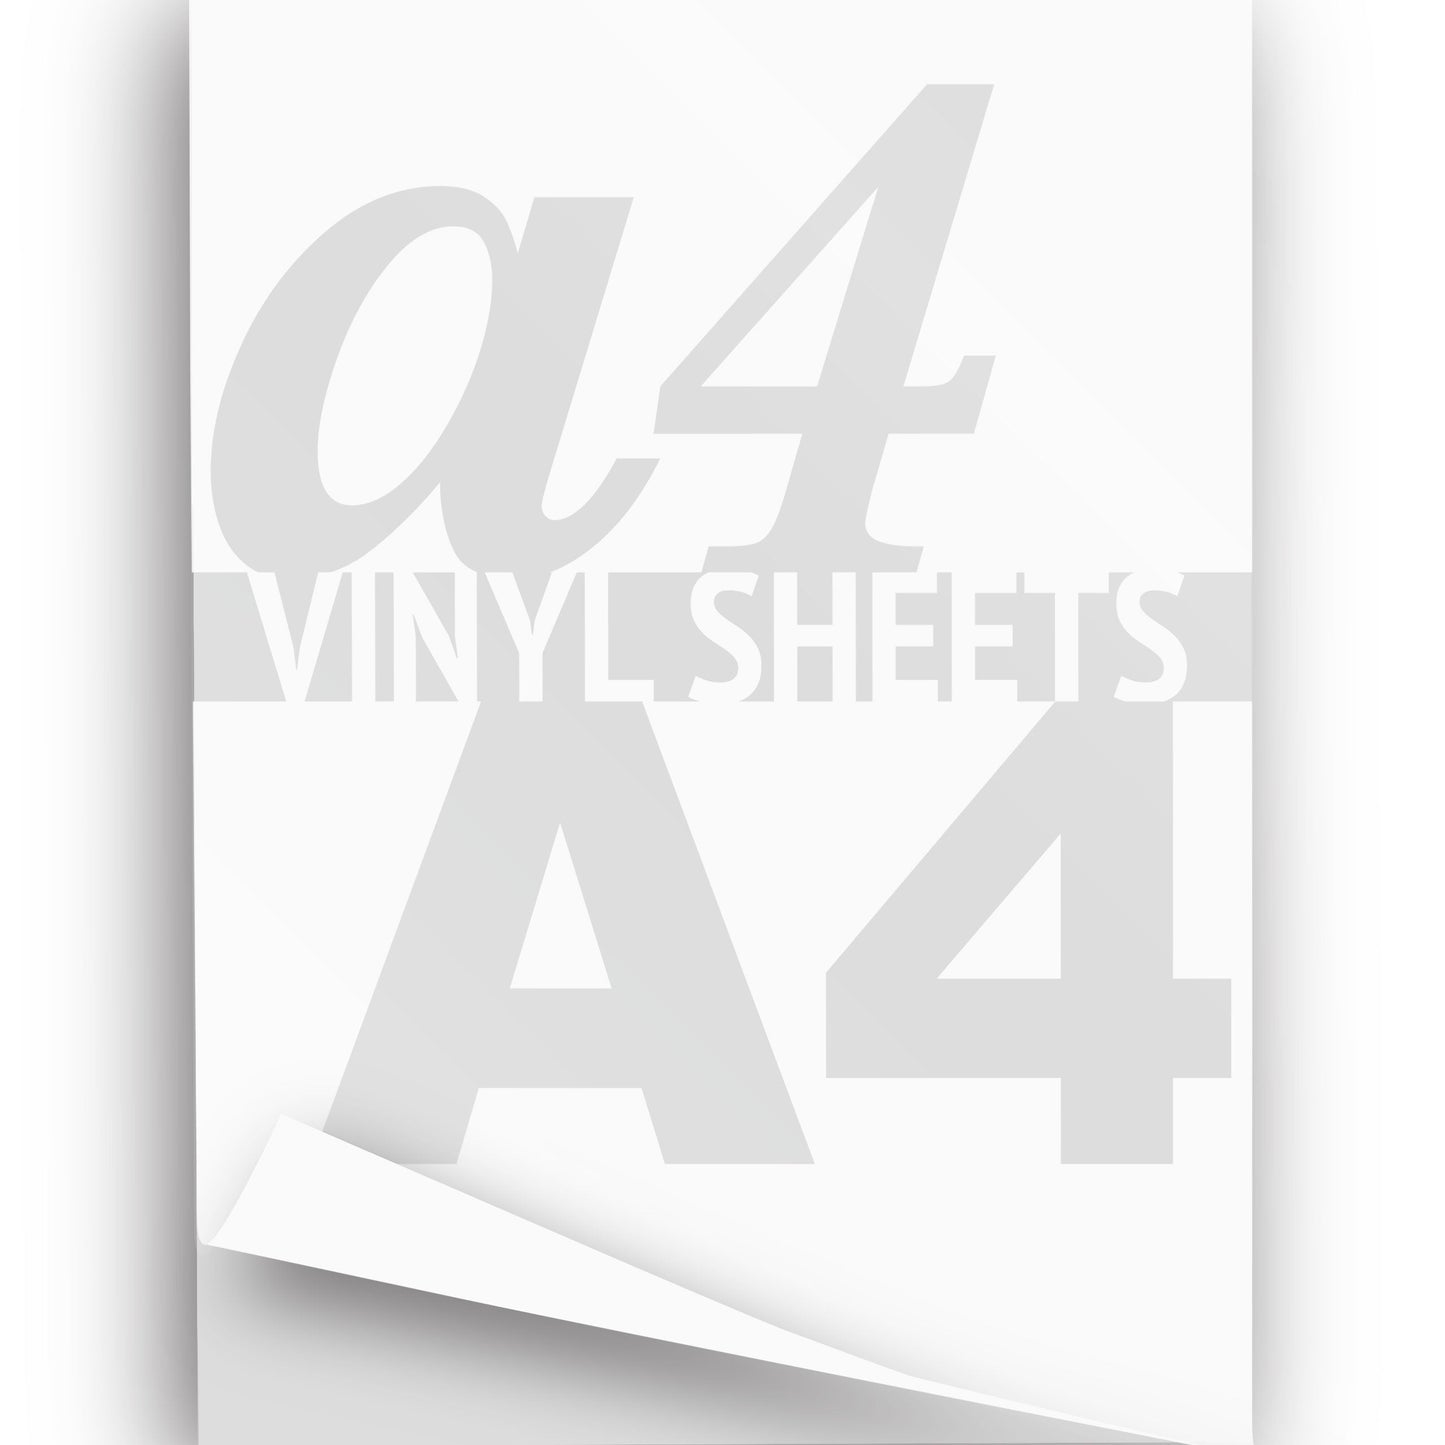 A4 A3 A2 Laser Printable Vinyl Sheets, Matte White